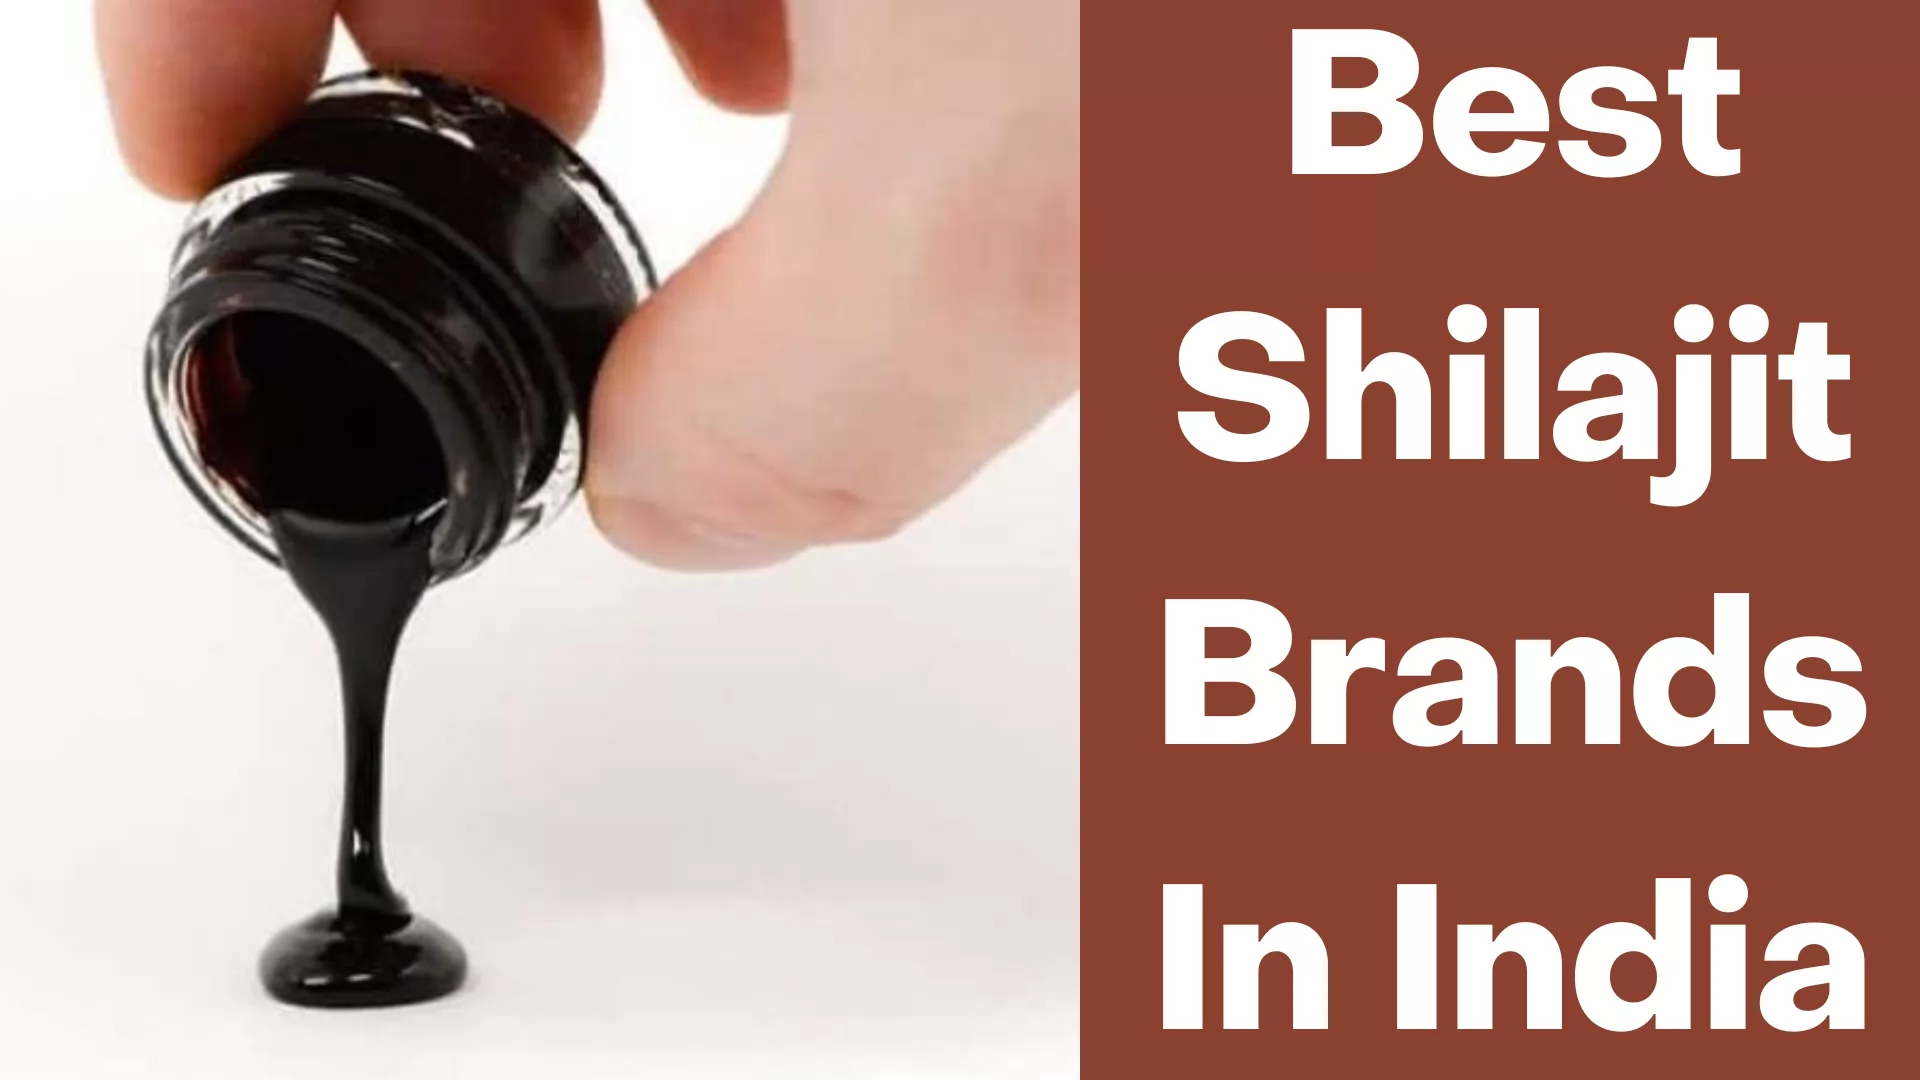 Best Shilajit Brands In India